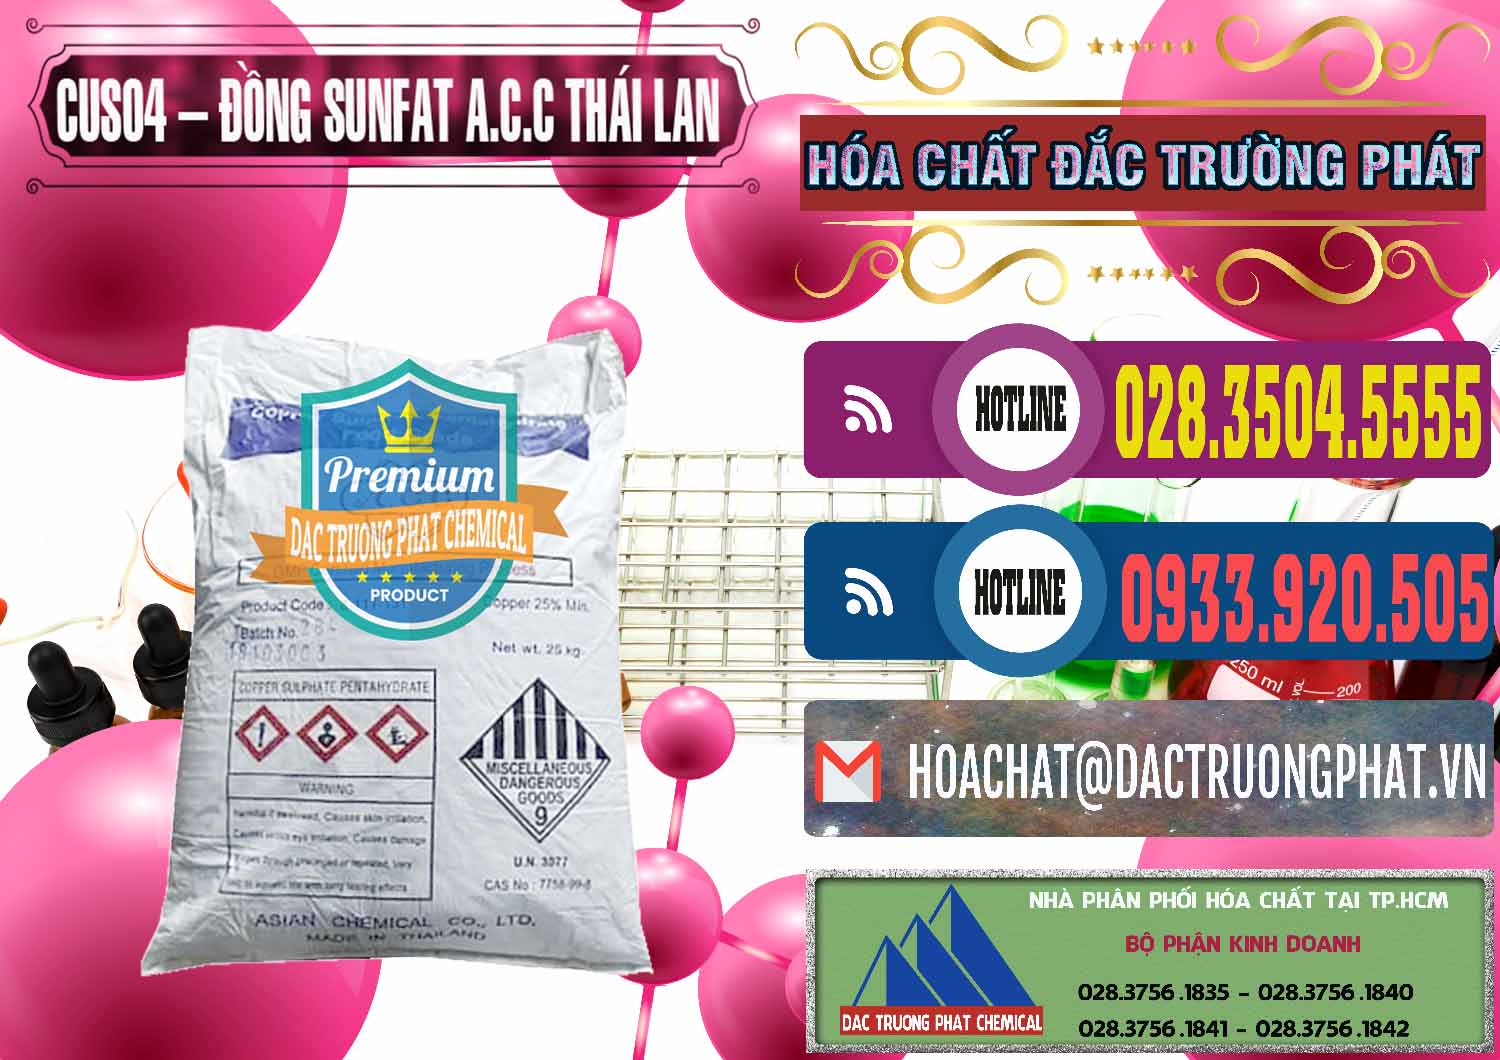 Cty bán và phân phối CuSO4 – Đồng Sunfat A.C.C Thái Lan - 0249 - Chuyên phân phối và cung cấp hóa chất tại TP.HCM - muabanhoachat.com.vn